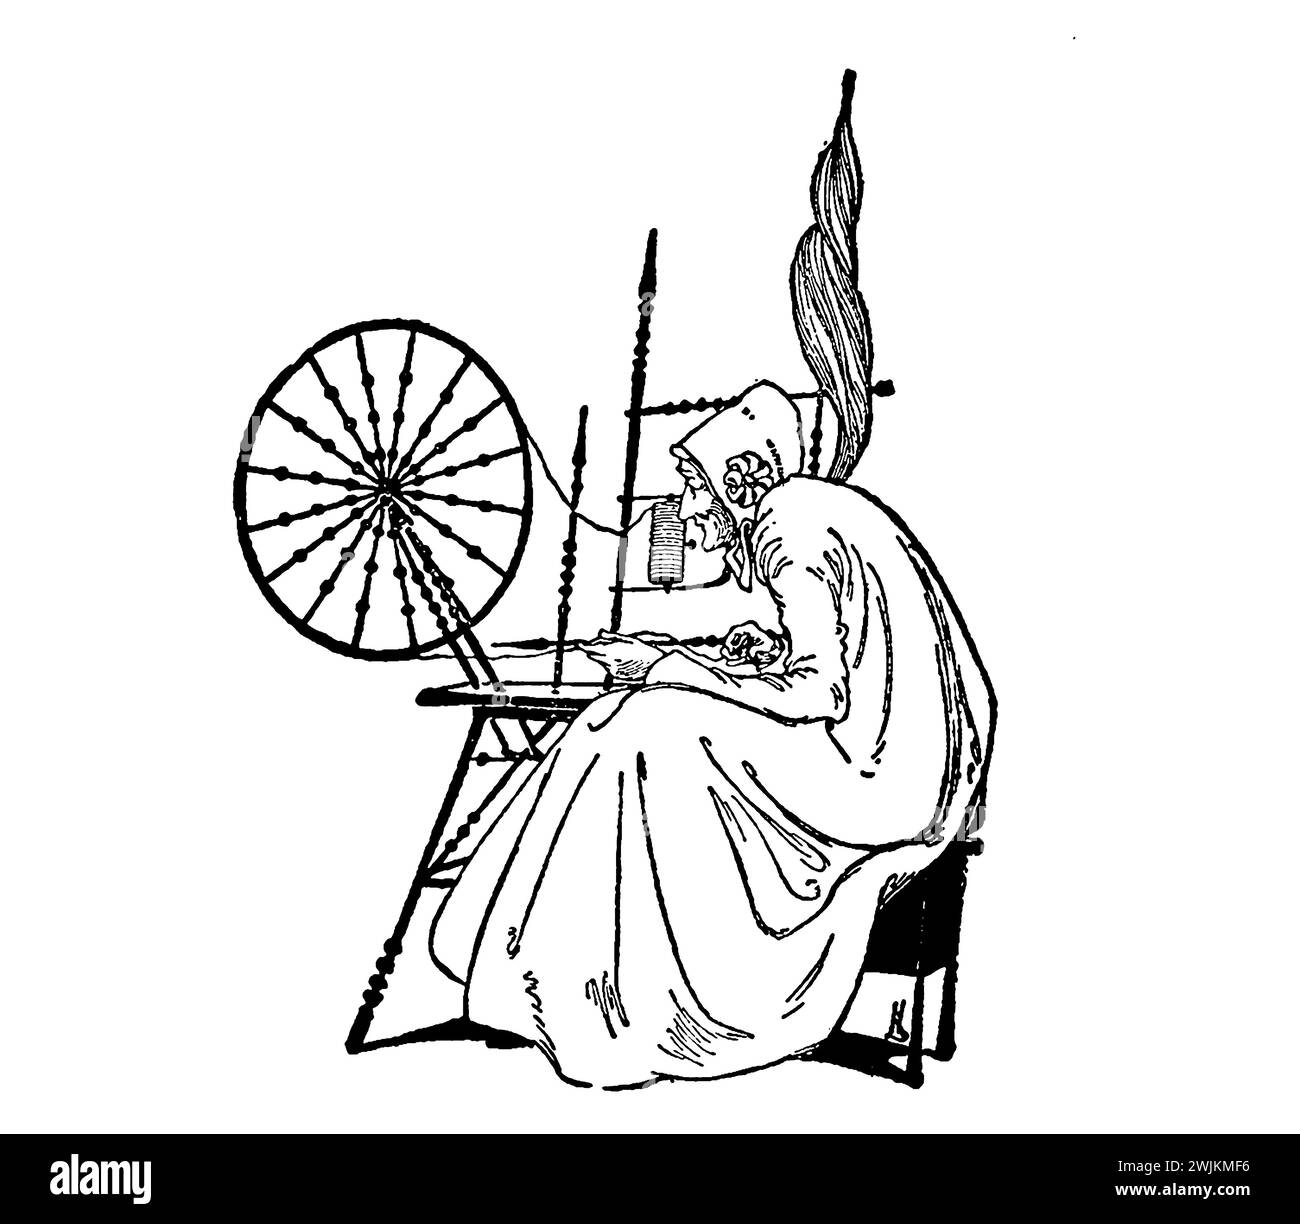 The Spinning Wheel the Princess and Curdie ist ein Kinderroman von George MacDonald aus dem Jahr 1883. Das Buch ist die Fortsetzung von The Princess and the Goblin. Das Abenteuer geht weiter mit Prinzessin Irene und Curdie, die ein oder zwei Jahre älter sind. Sie müssen eine Reihe korrupter Minister stürzen, die Irenes Vater, den König, vergiften. Irenes Großmutter taucht ebenfalls wieder auf und schenkt Curdie ein seltsames Geschenk. Ein Monster namens Lina hilft bei seiner Suche. Stockfoto